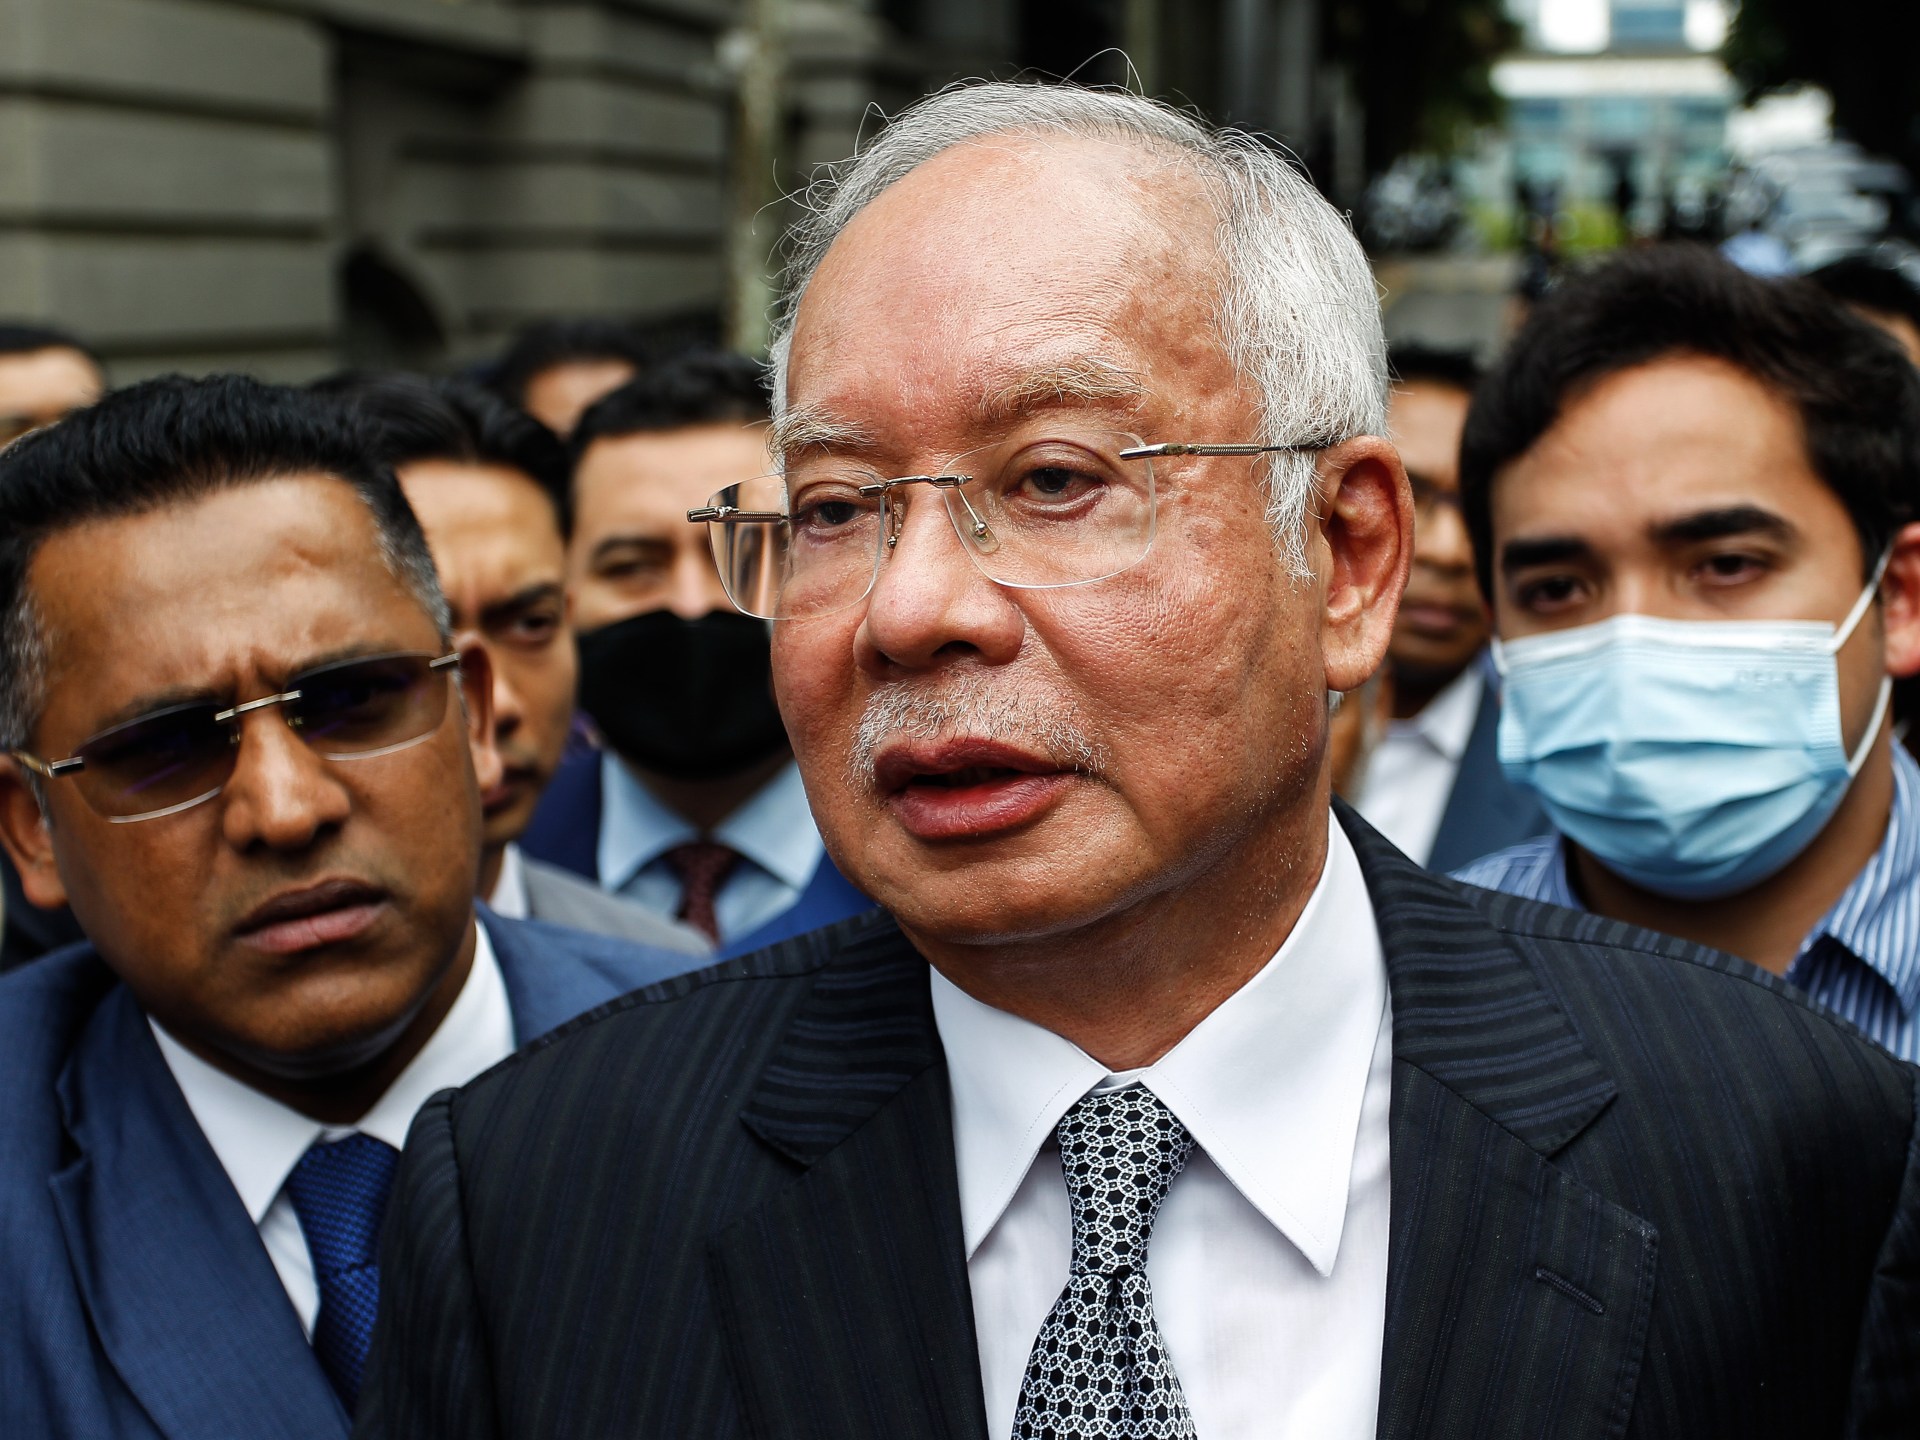 Malaezia reduce la jumătate pedeapsa cu închisoarea fostului prim-ministru Najib Razak în scandalul de corupție 1MDB  Știri despre corupție